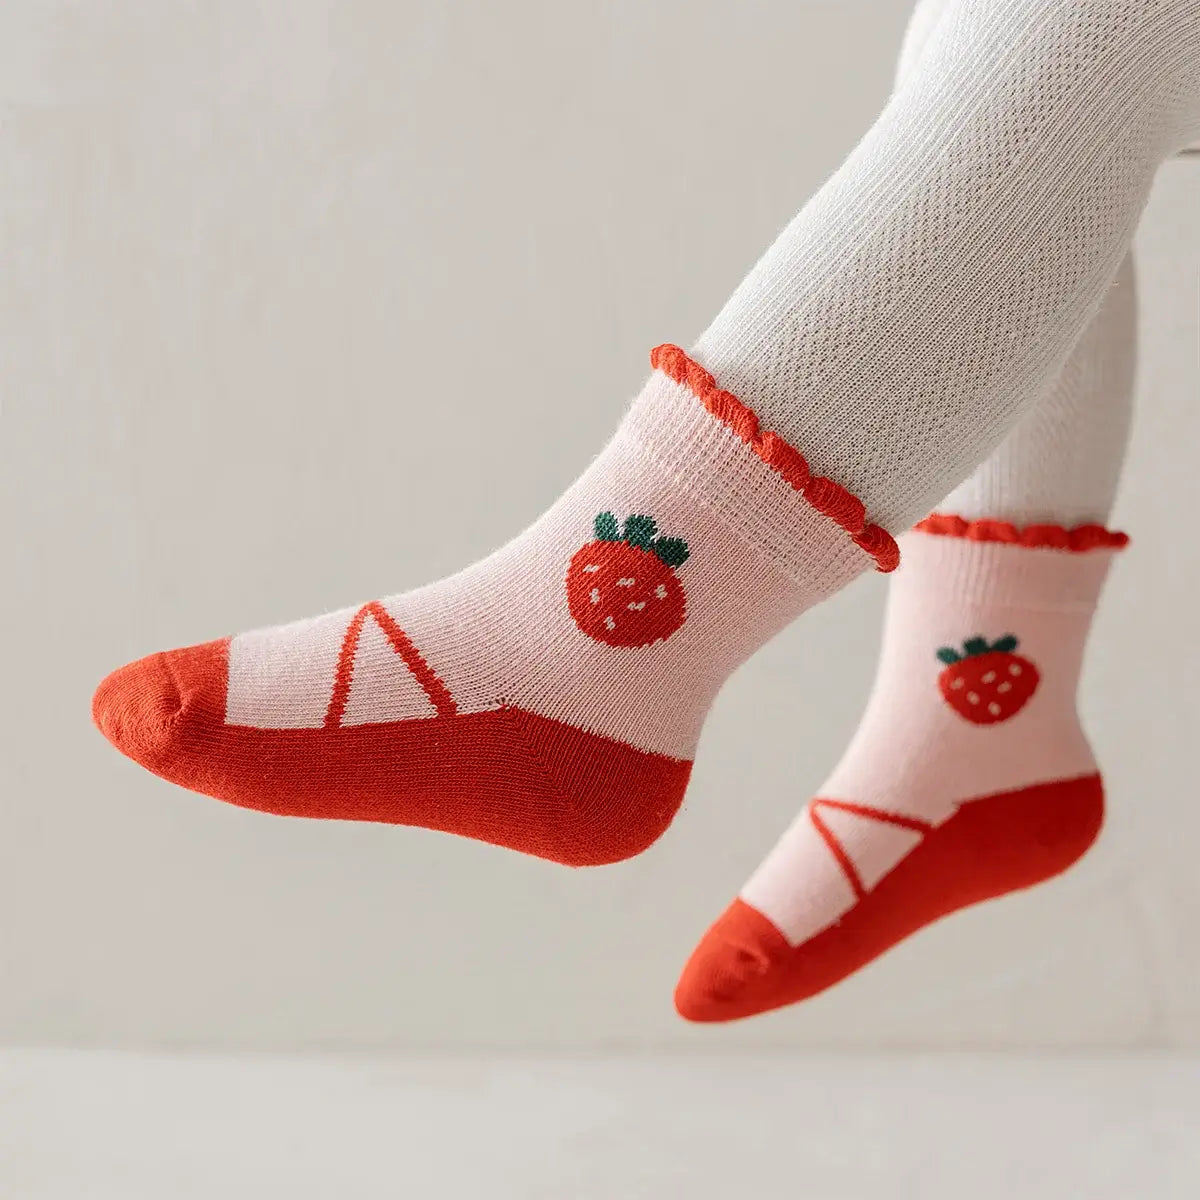 Chaussettes en coton à motif fraise pour enfants | Chaussettes douces et confortables | Disponibles en différentes tailles et couleurs | Un cadeau idéal pour les enfants de tous âges